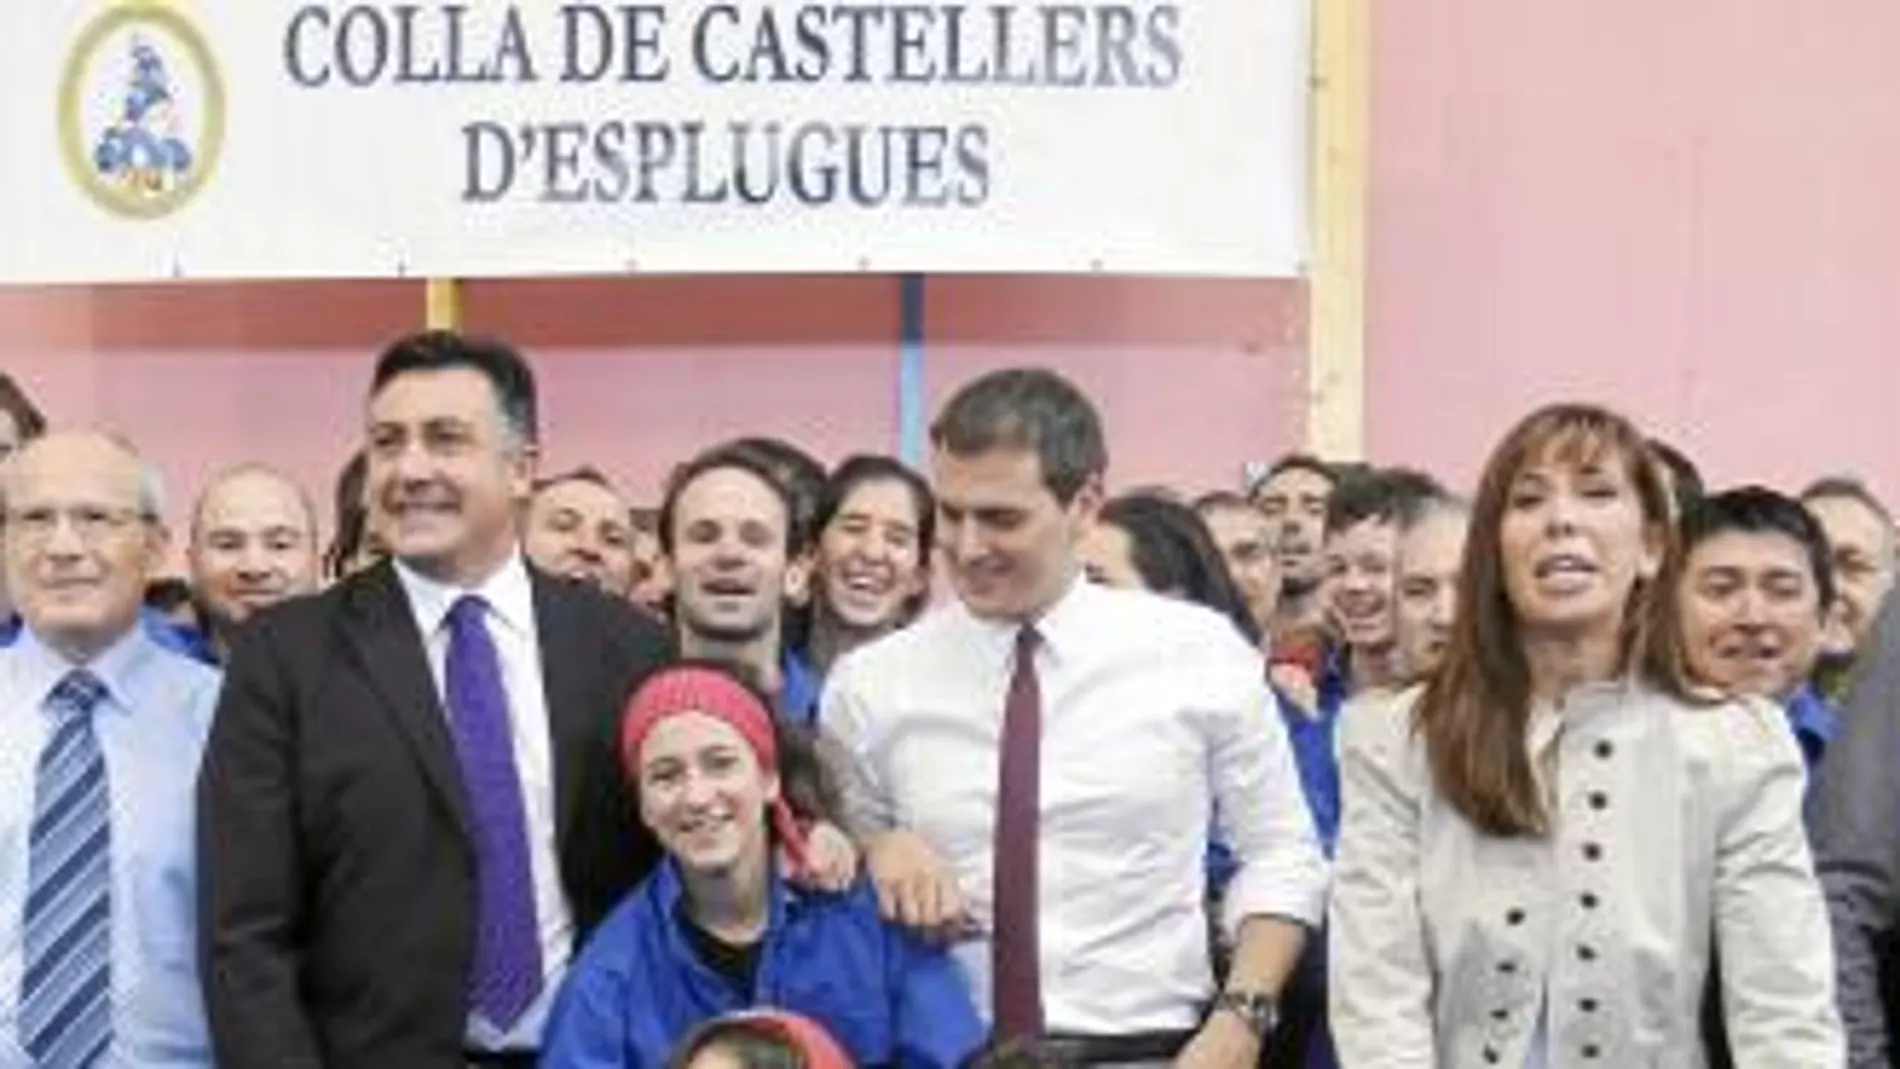 Los candidatos a la presidencia de la Generalitat posaron ayer junto a la colla Castells d'Esplugues. Luego, pasaron en familia la jornada de reflexión